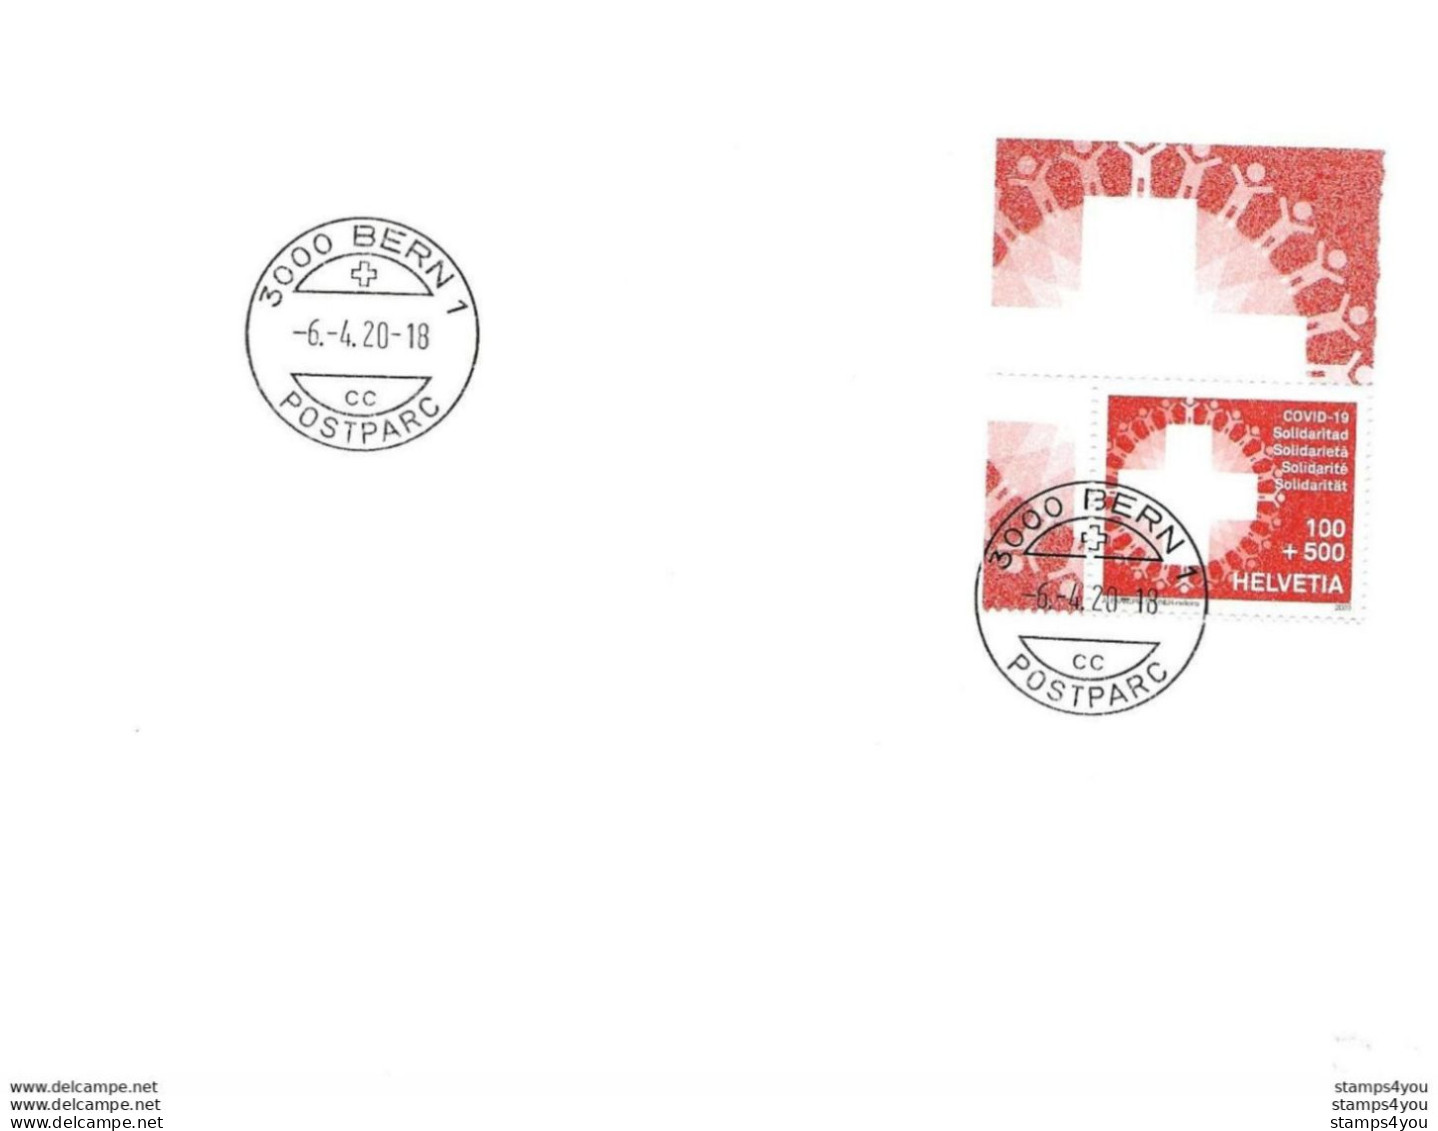 433 - 49 - Enveloppe Avec Timbre "Covid" Cachet à Date Bern 6.4.20. - Date 1er Jour Du Timbre - Covers & Documents